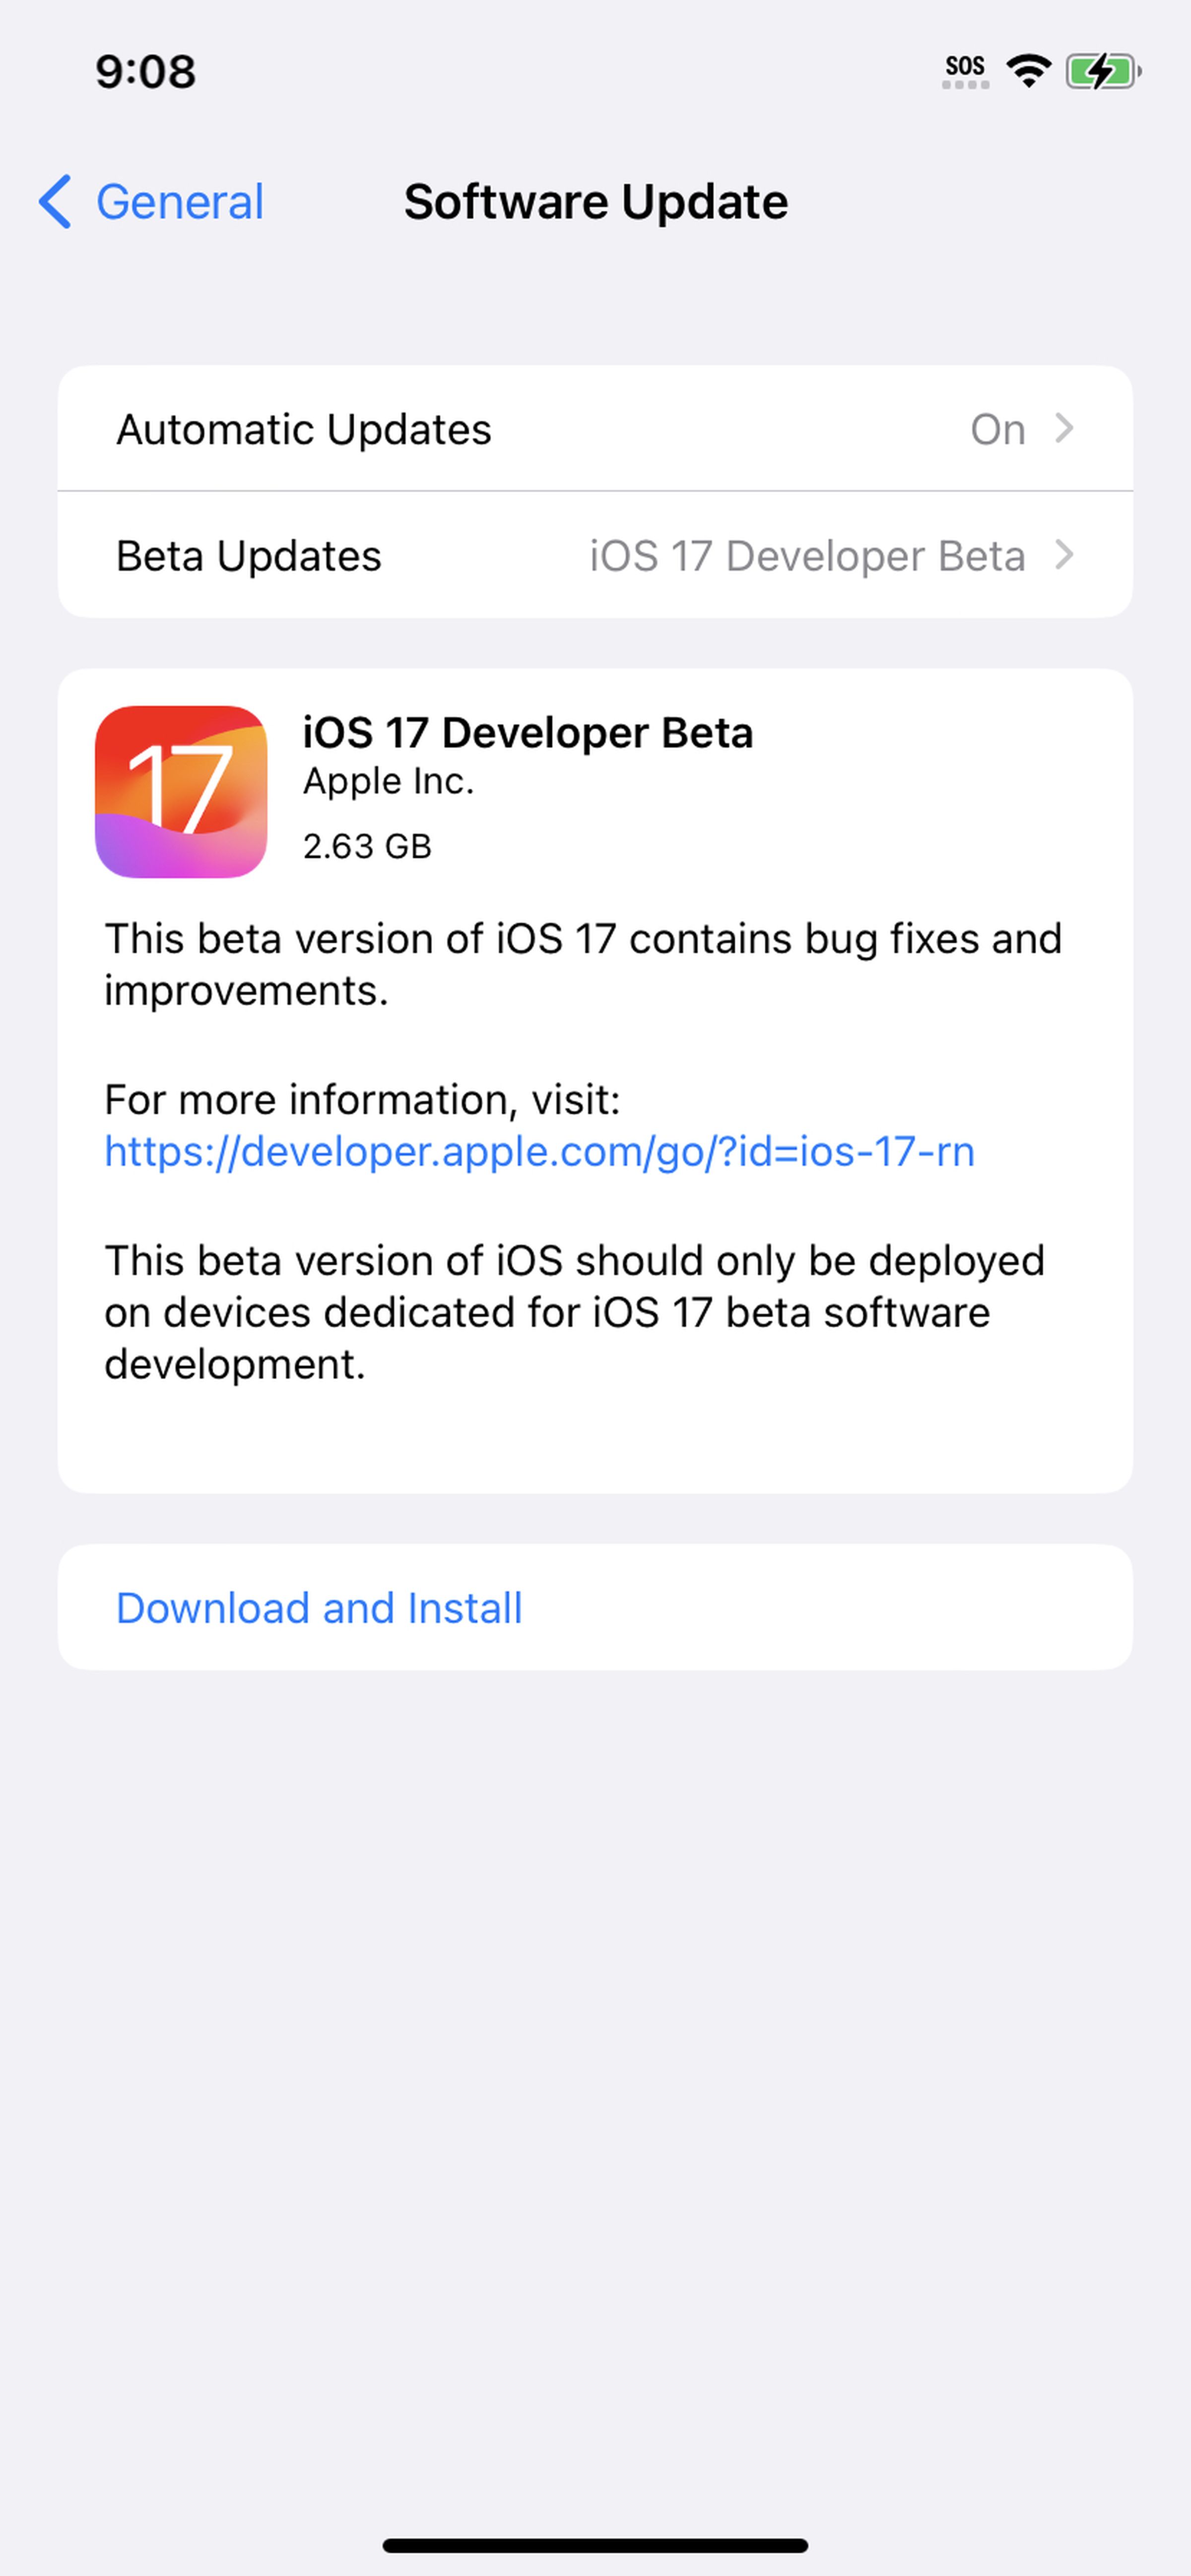 Página de atualização de software no iPone com iOS 17 Developer Beta aparecendo na página como pronto para download.